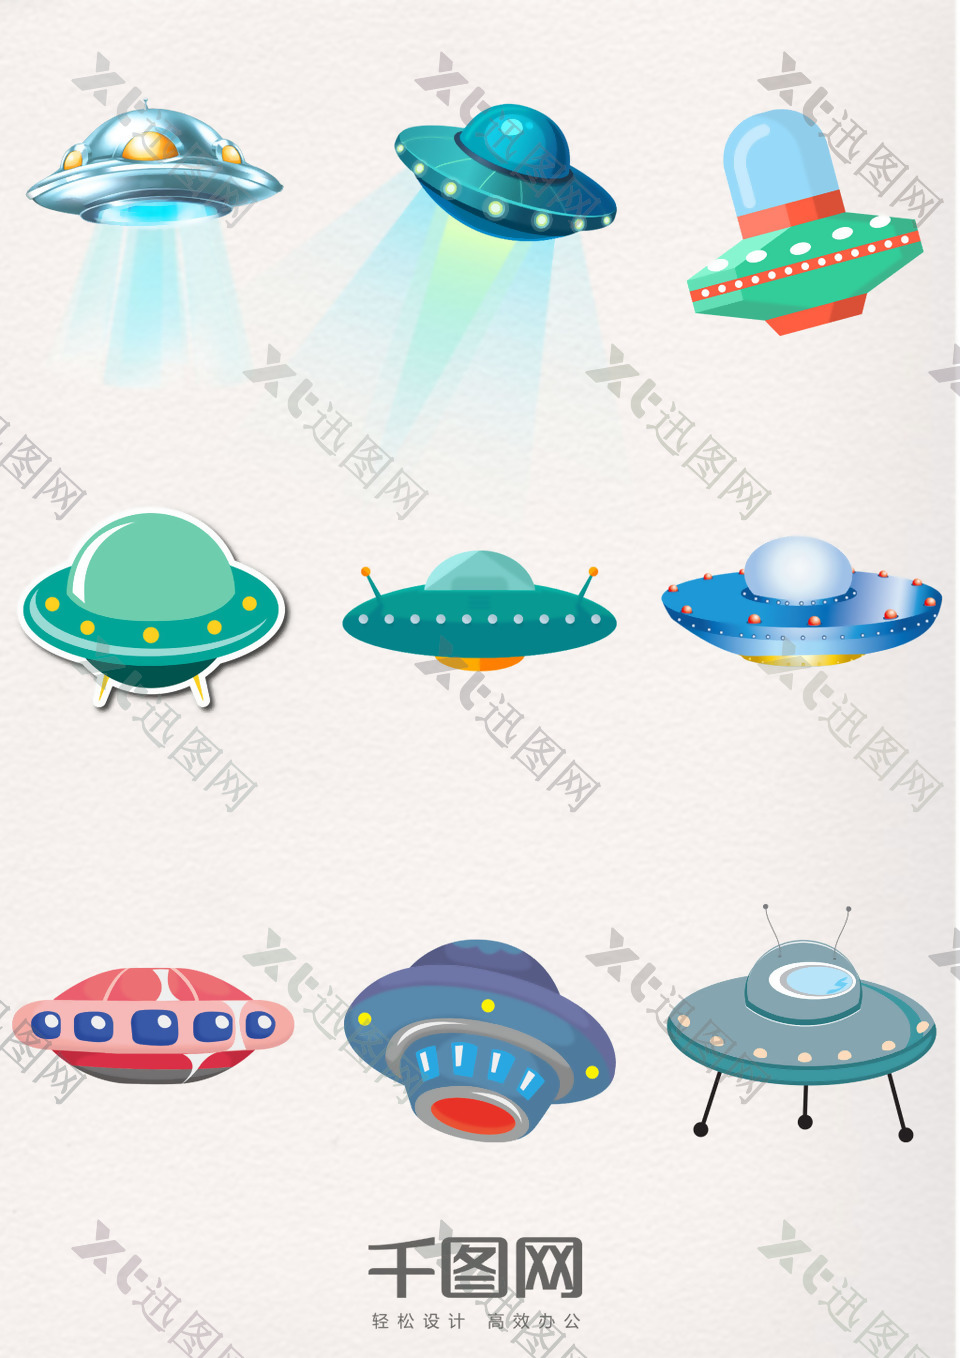 可爱卡通太空飞行器飞碟UFO